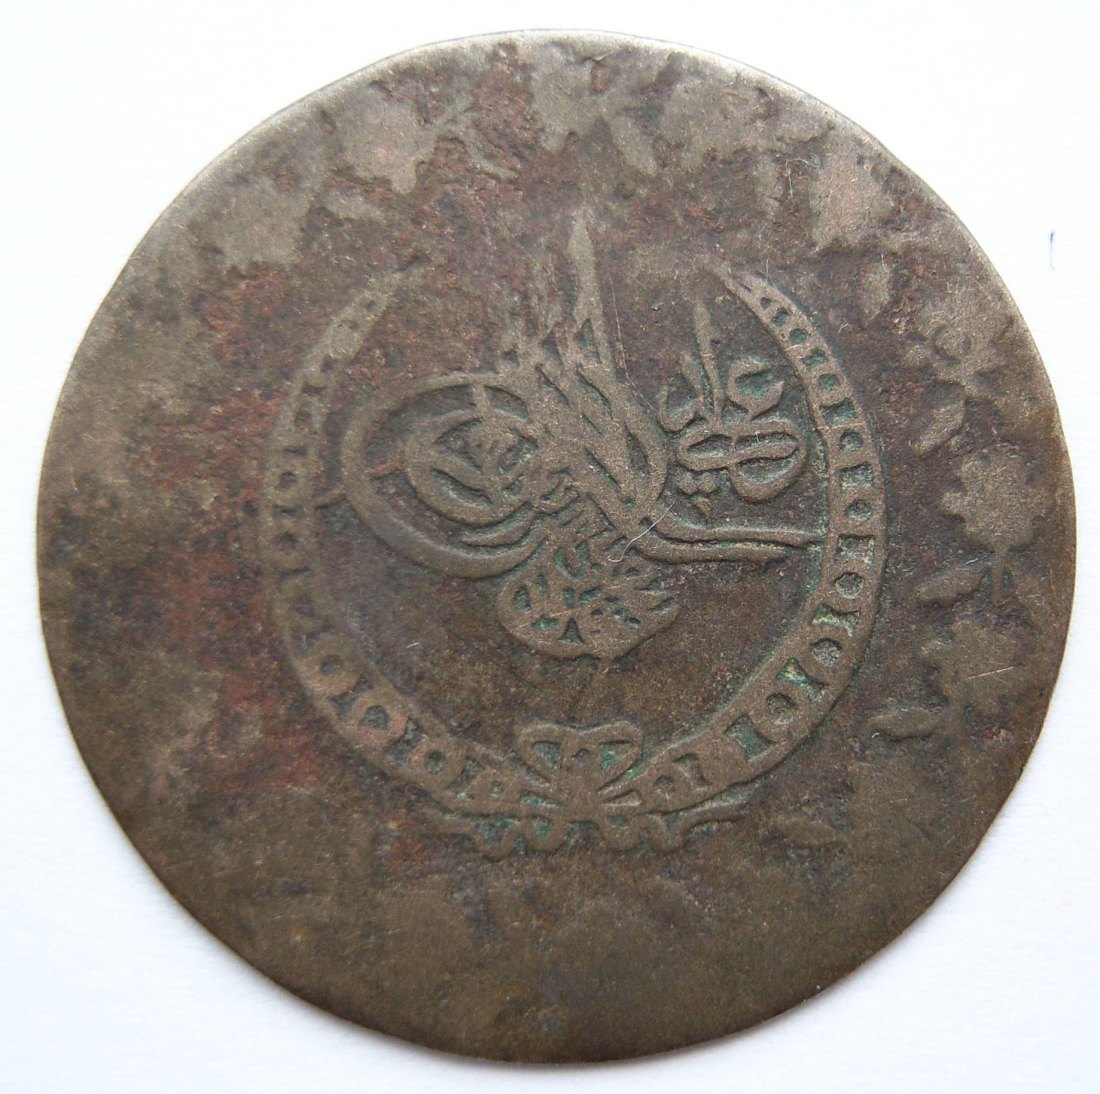  Osmanisches Reich Münze   